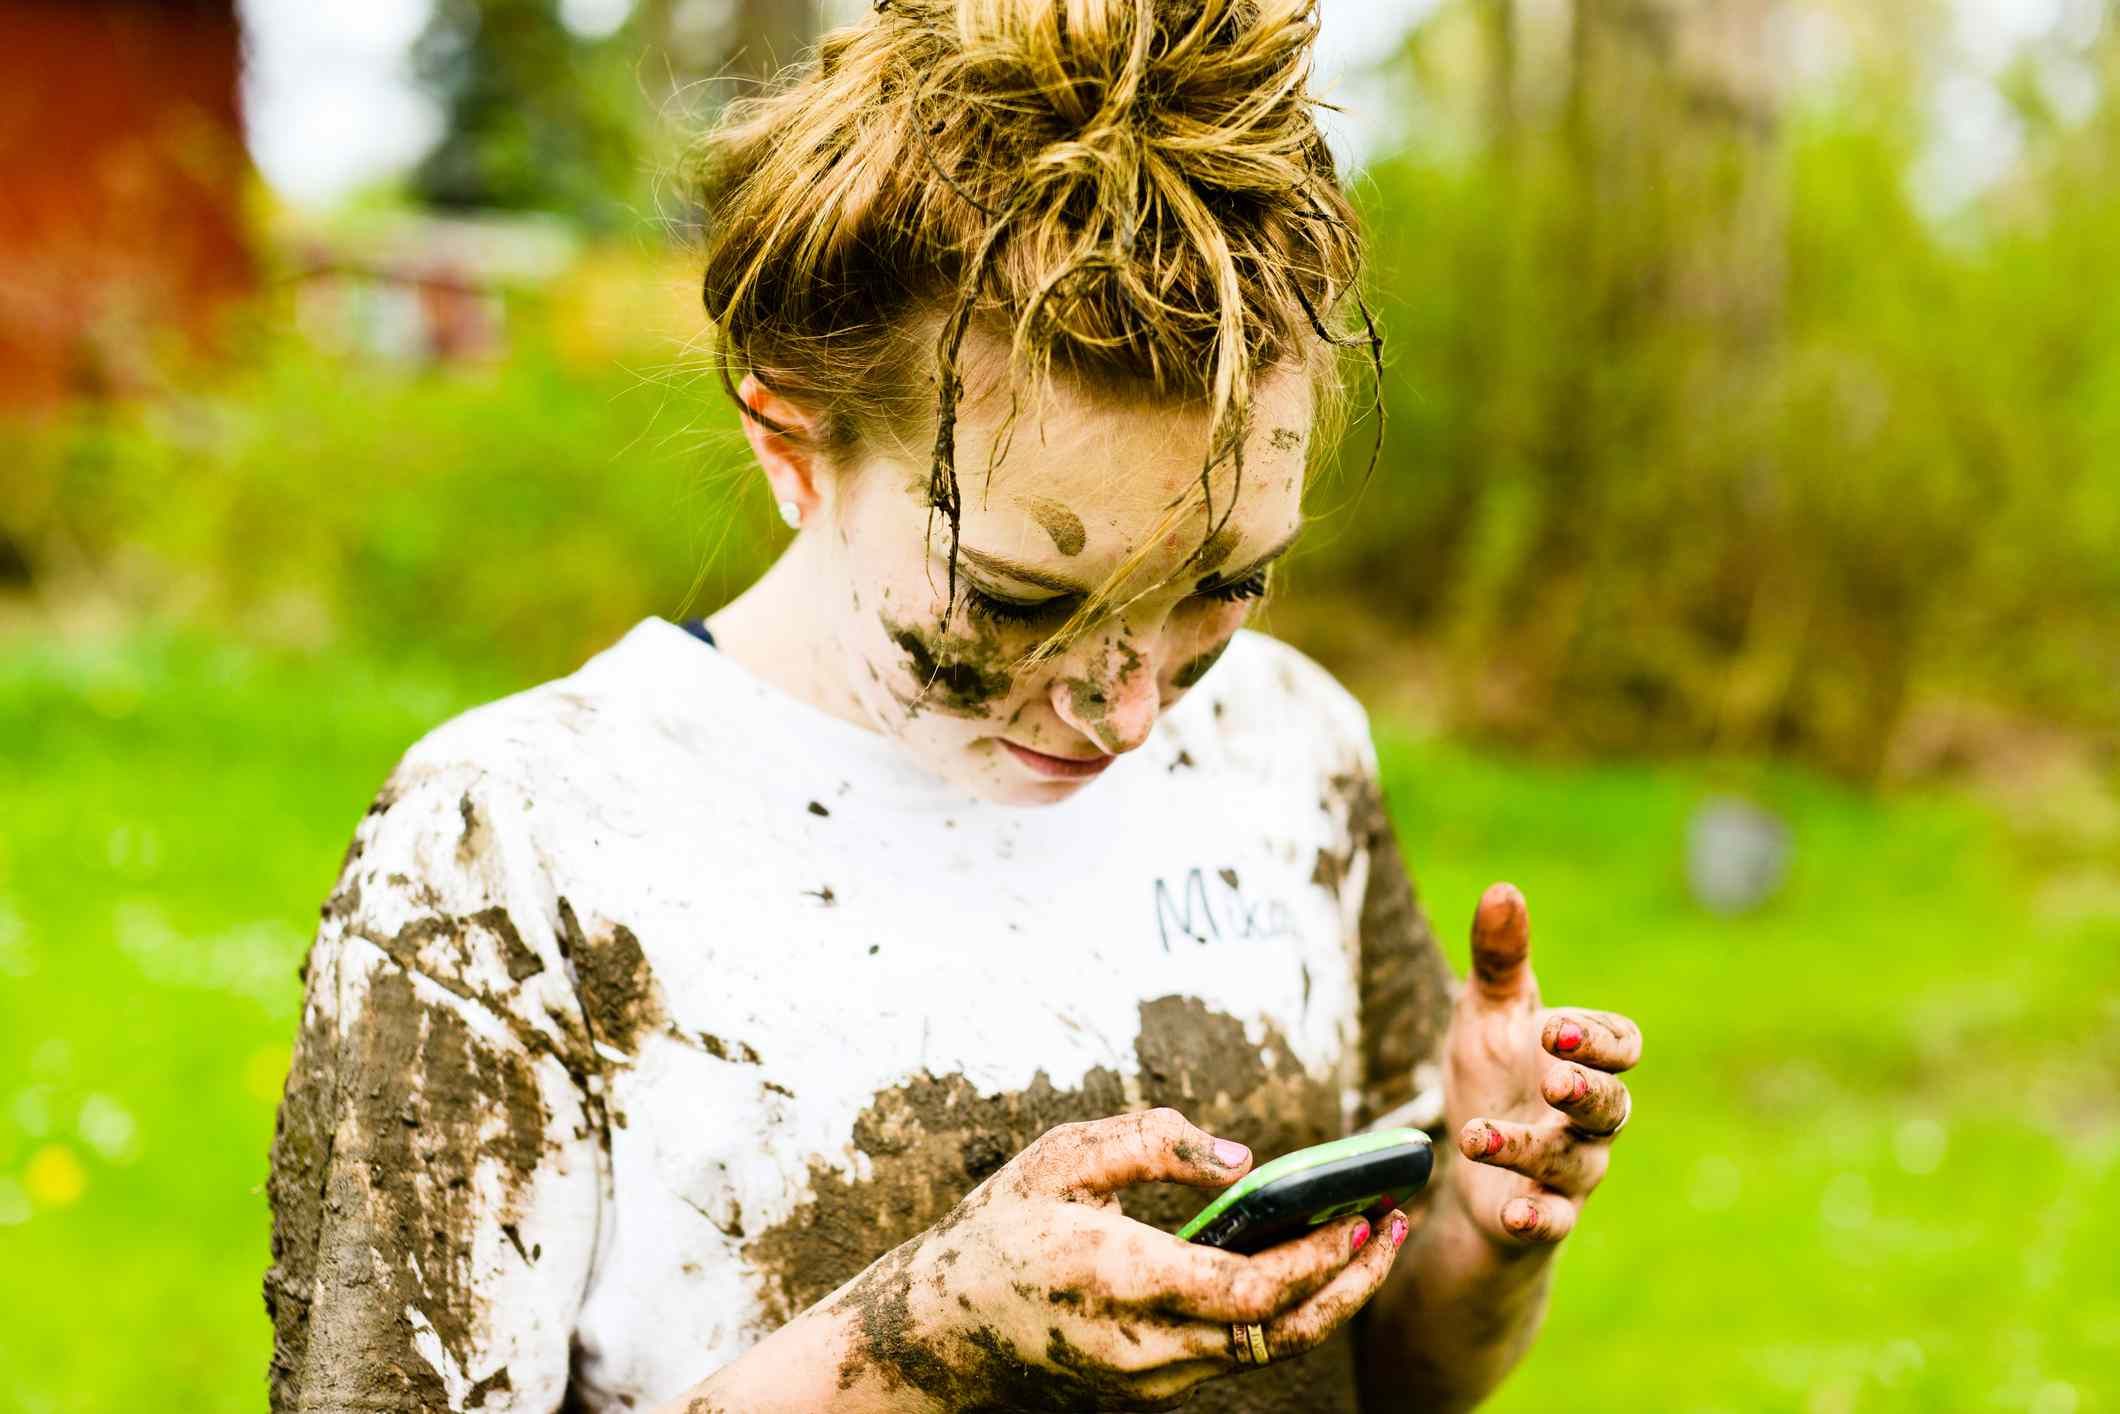 Изображение девушки с грязью на всем протяжении и телефона в руке.